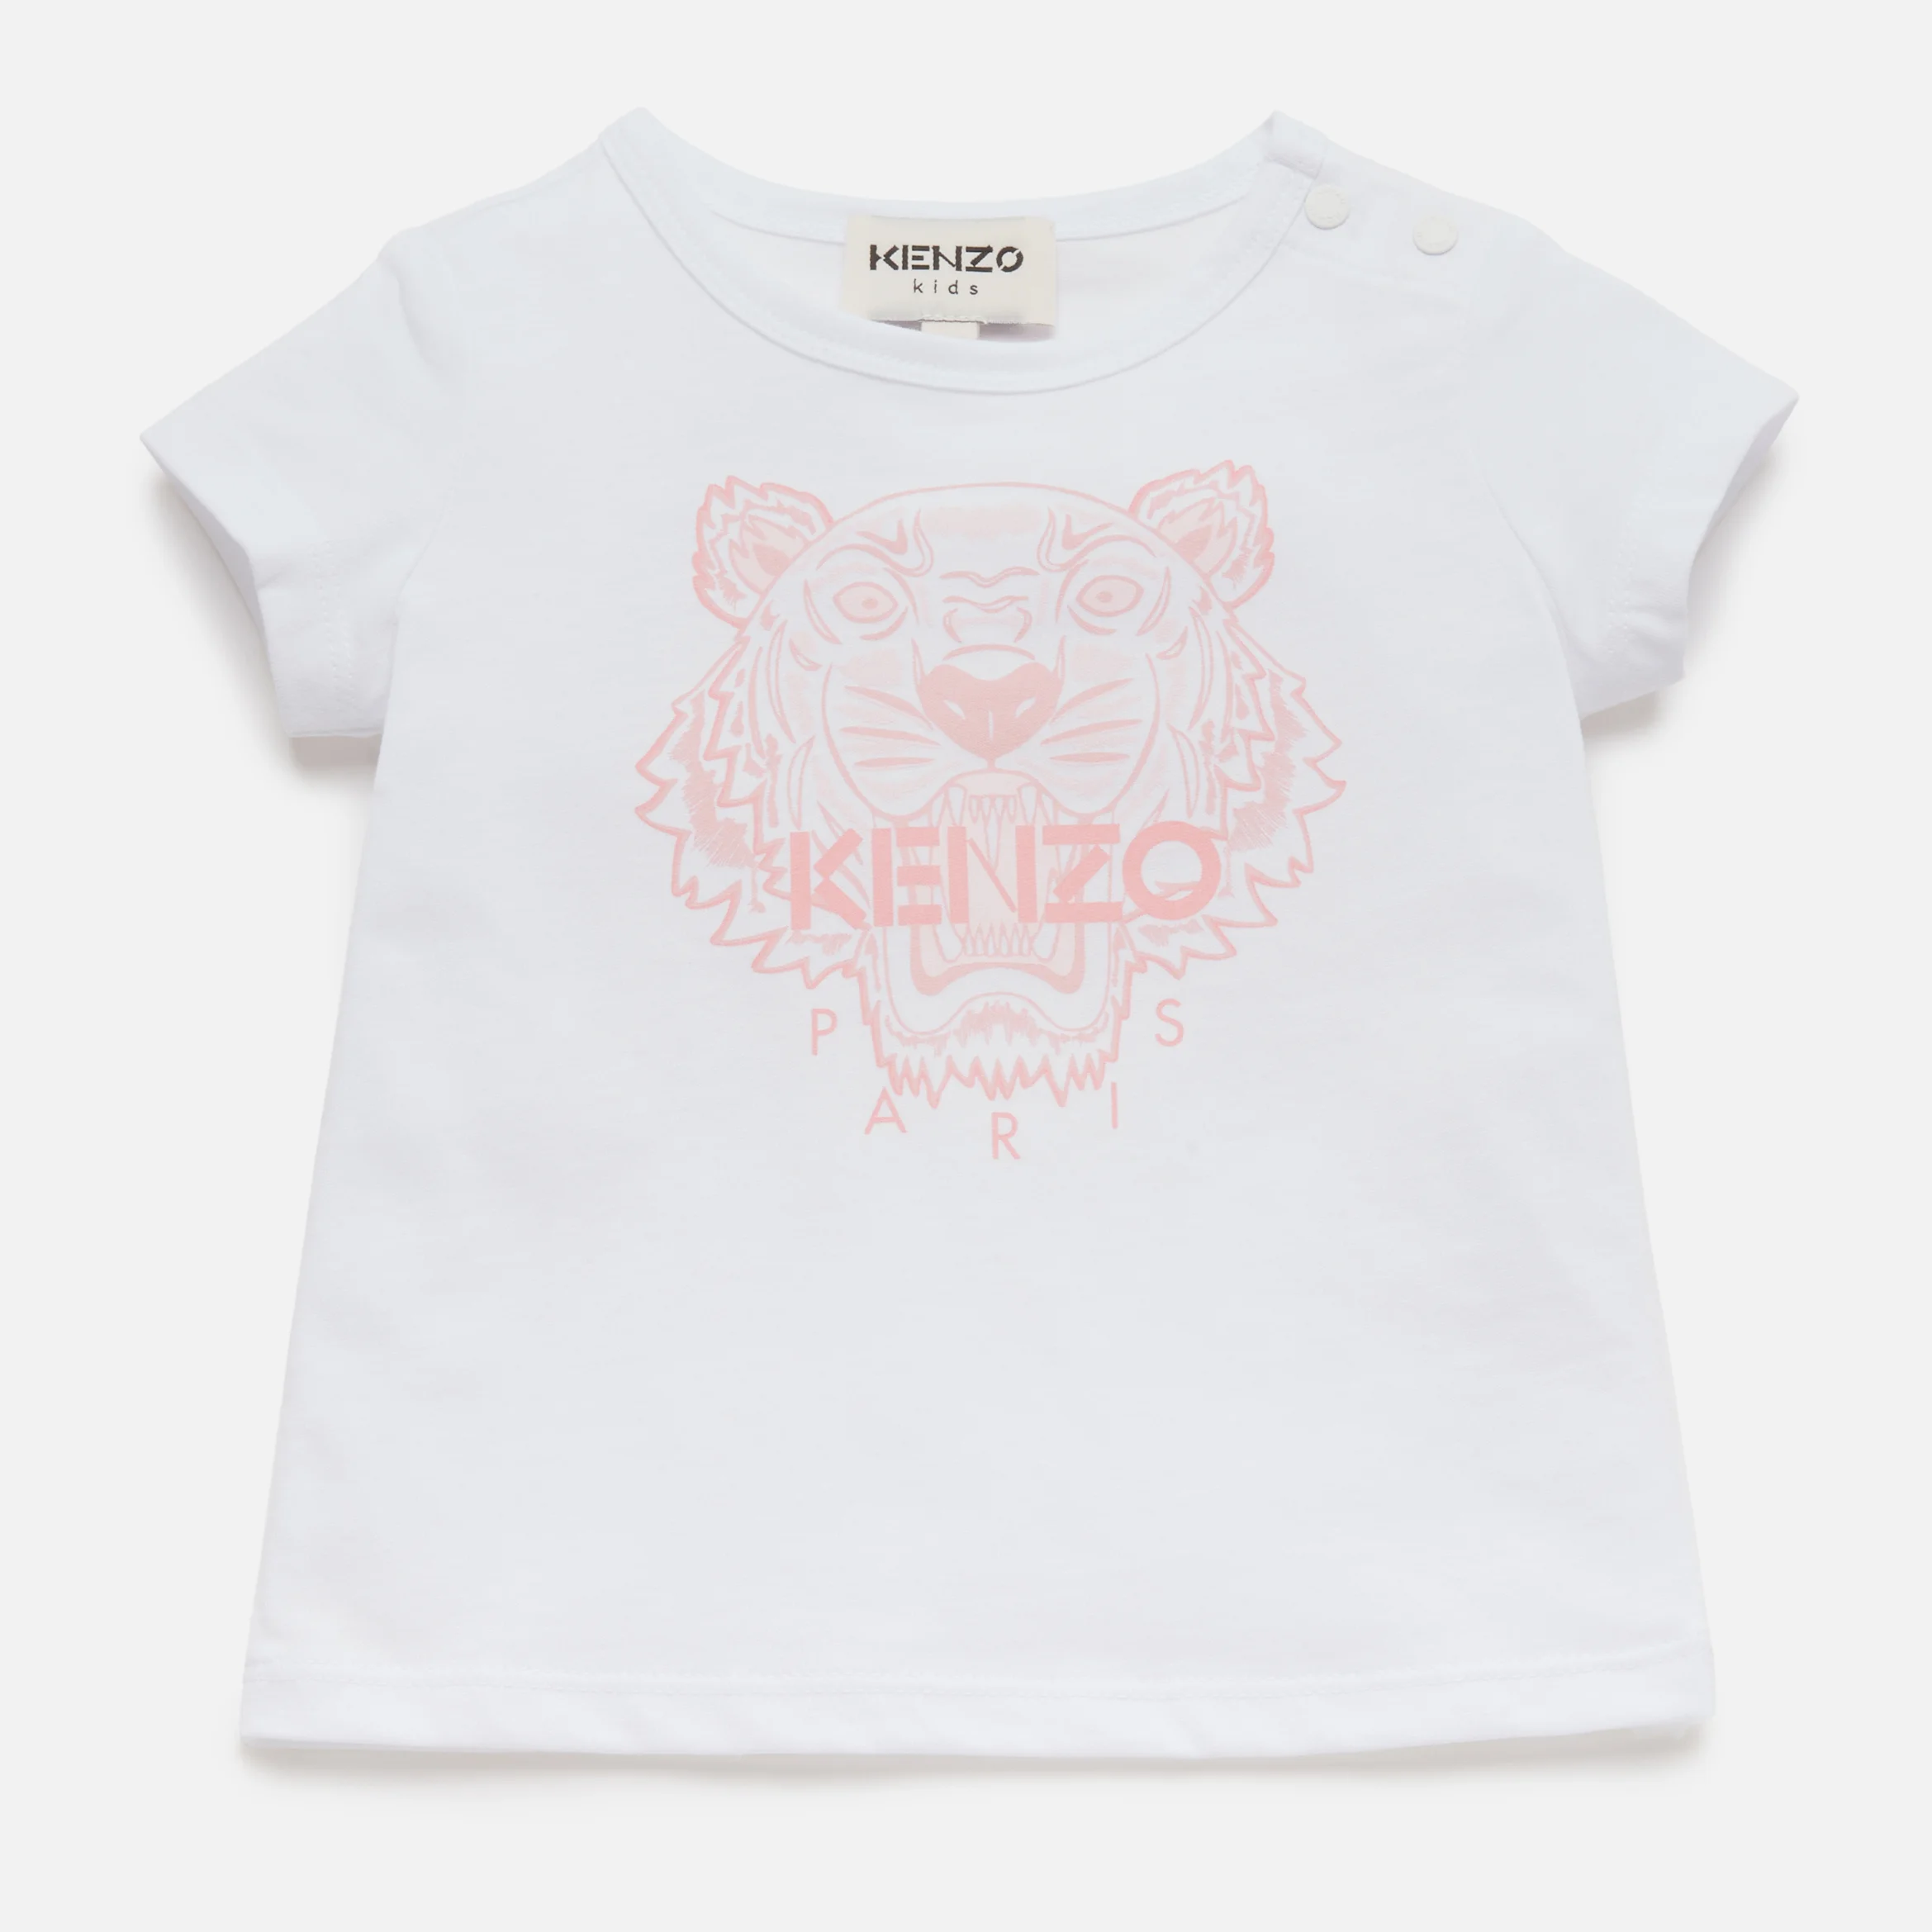 KENZO Toddlers' Tiger T-Shirt - Pink/Optic White Image 1